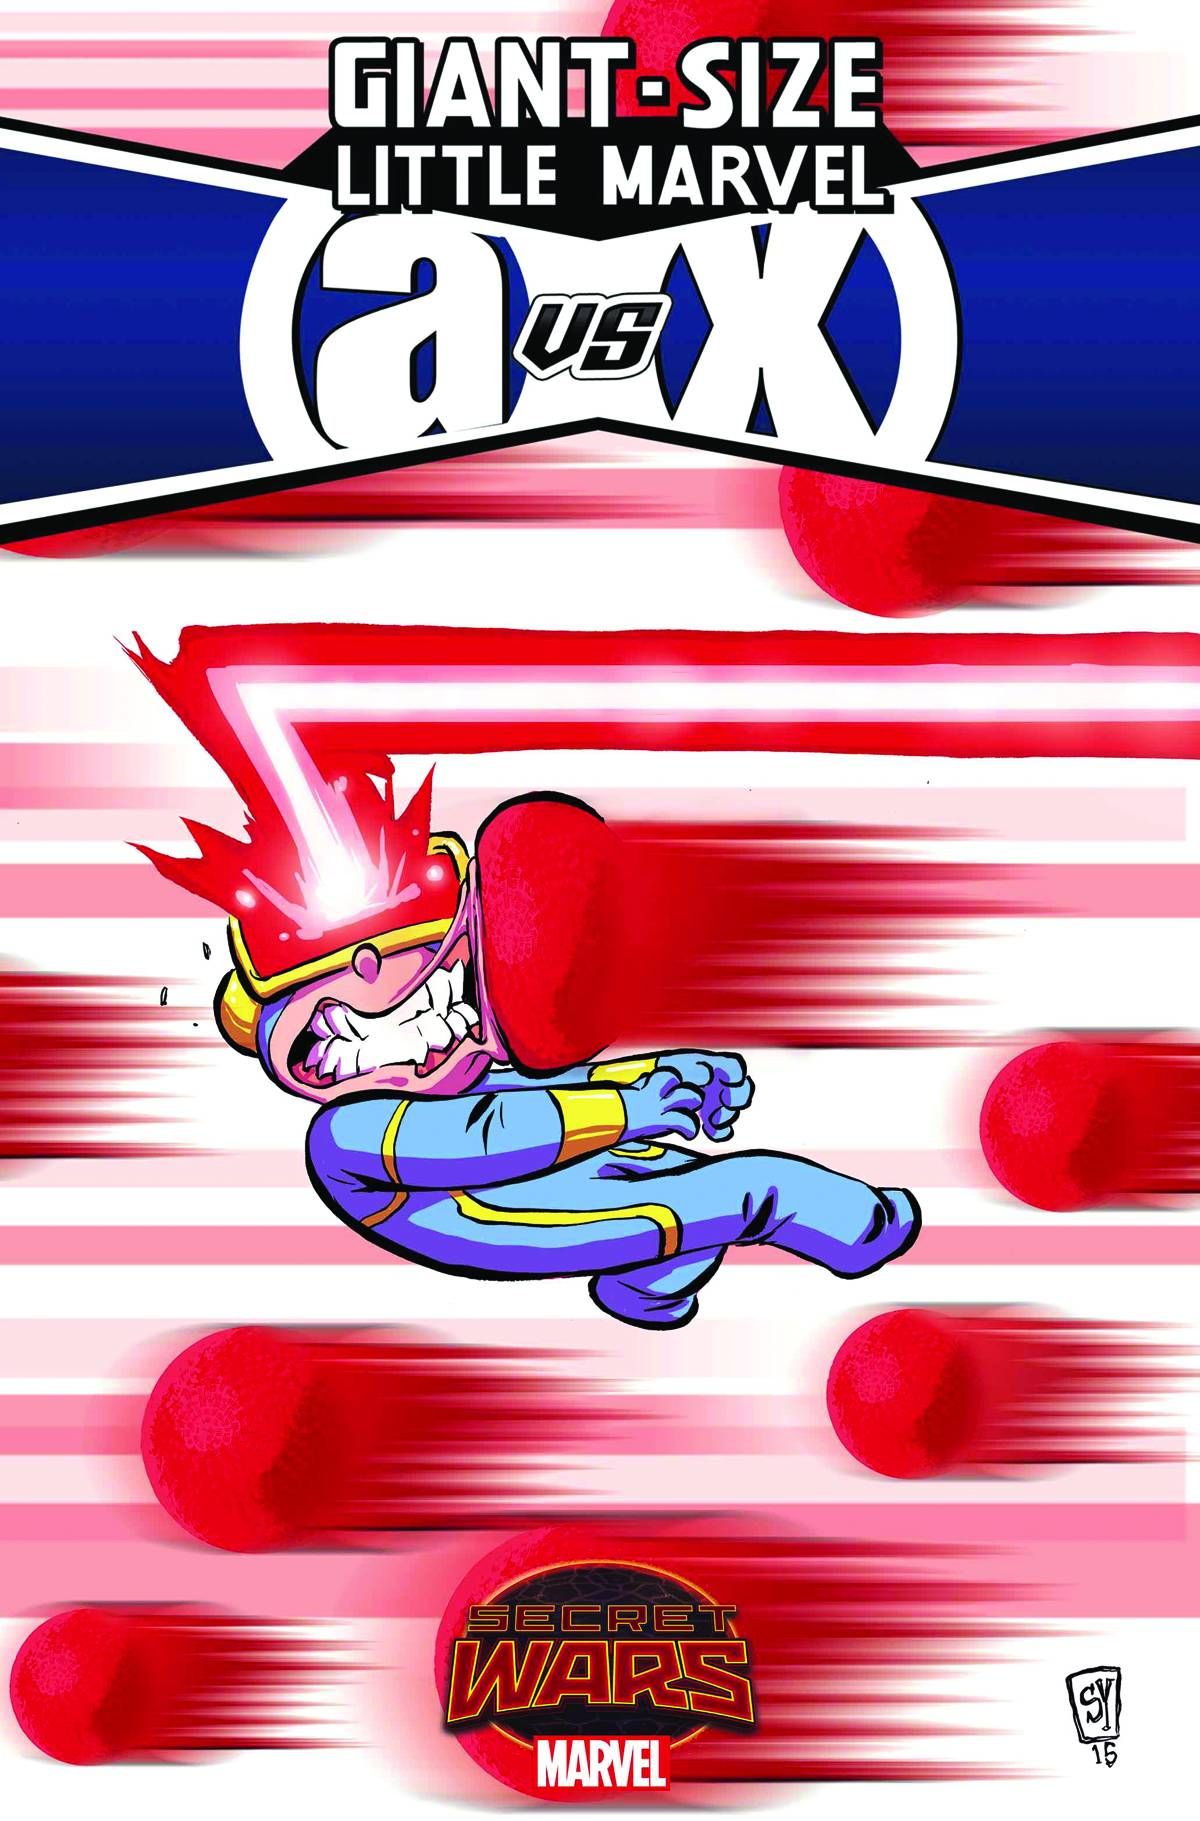 Giant Size Little Marvel Avx #2 Comic